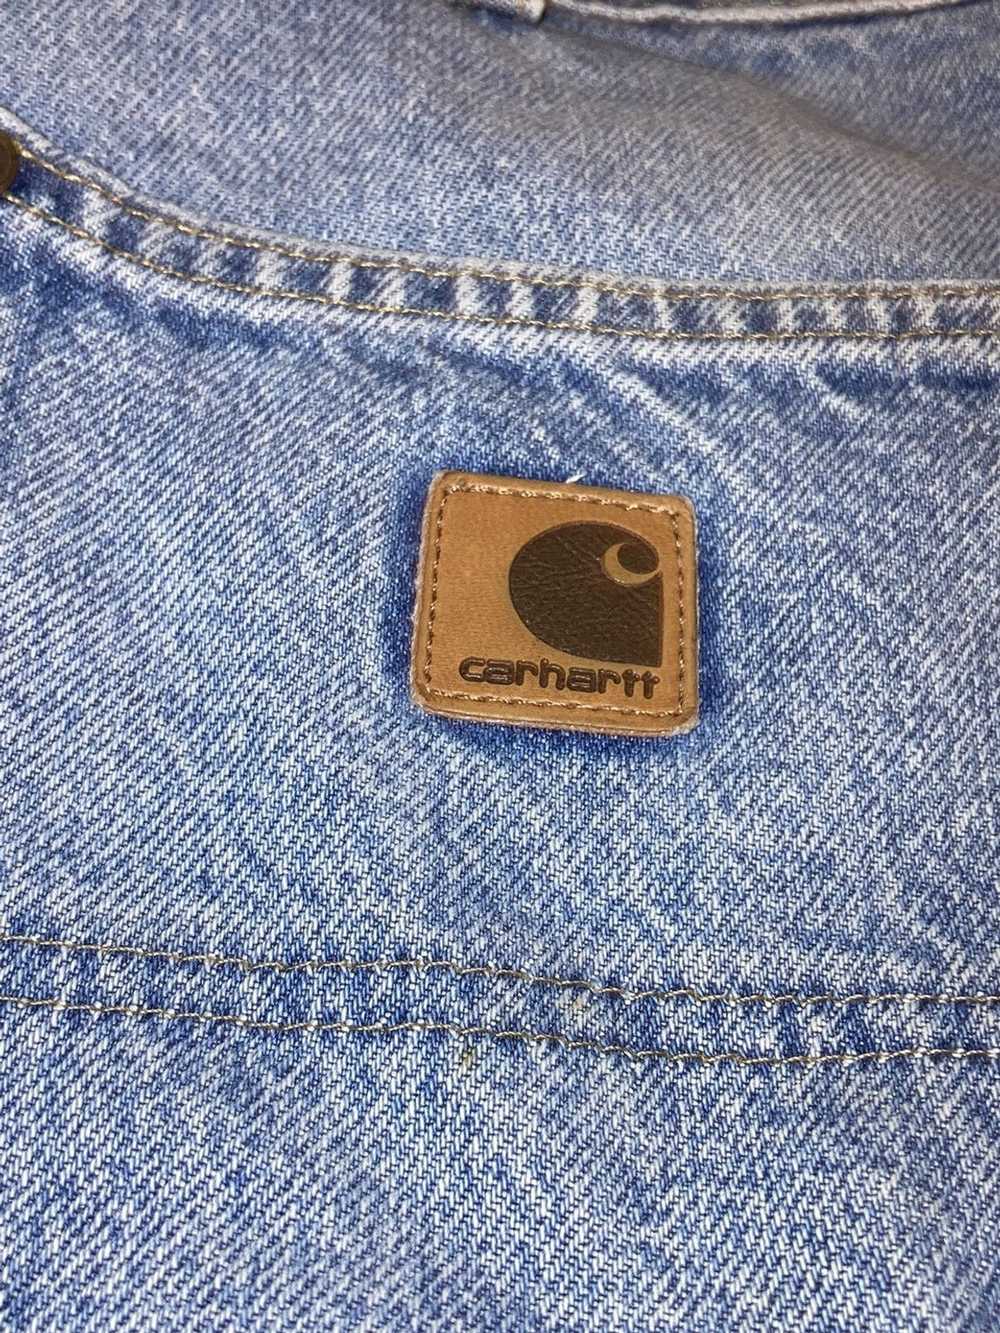 Carhartt Carhartt Carpenter Jeans - image 3